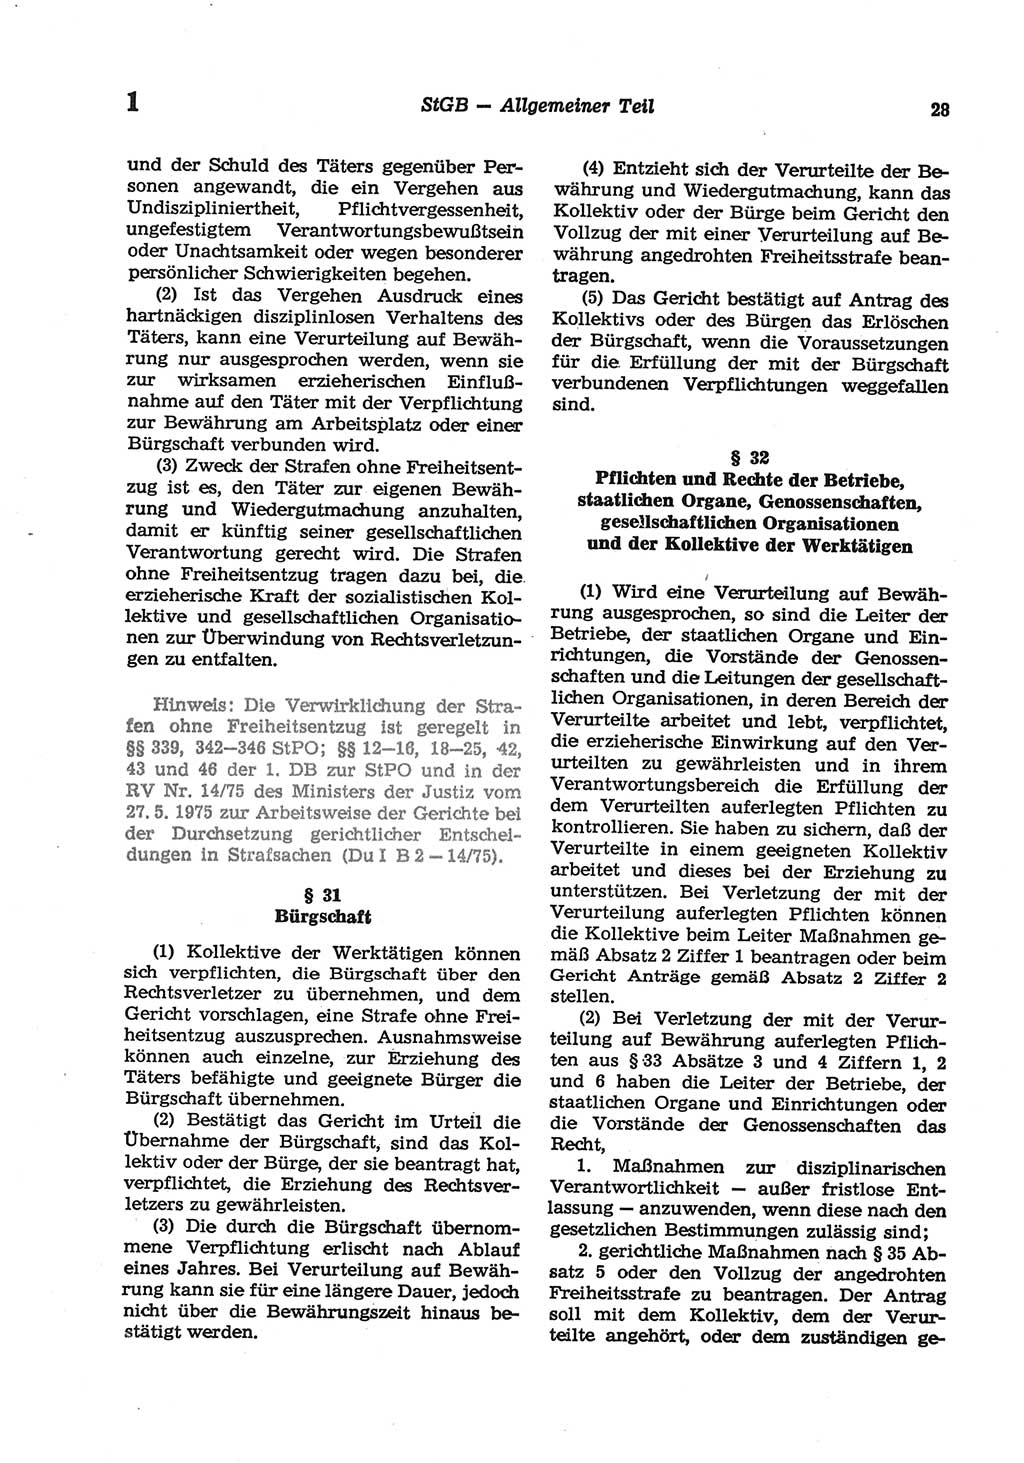 Strafgesetzbuch (StGB) der Deutschen Demokratischen Republik (DDR) und angrenzende Gesetze und Bestimmungen 1977, Seite 28 (StGB DDR Ges. Best. 1977, S. 28)